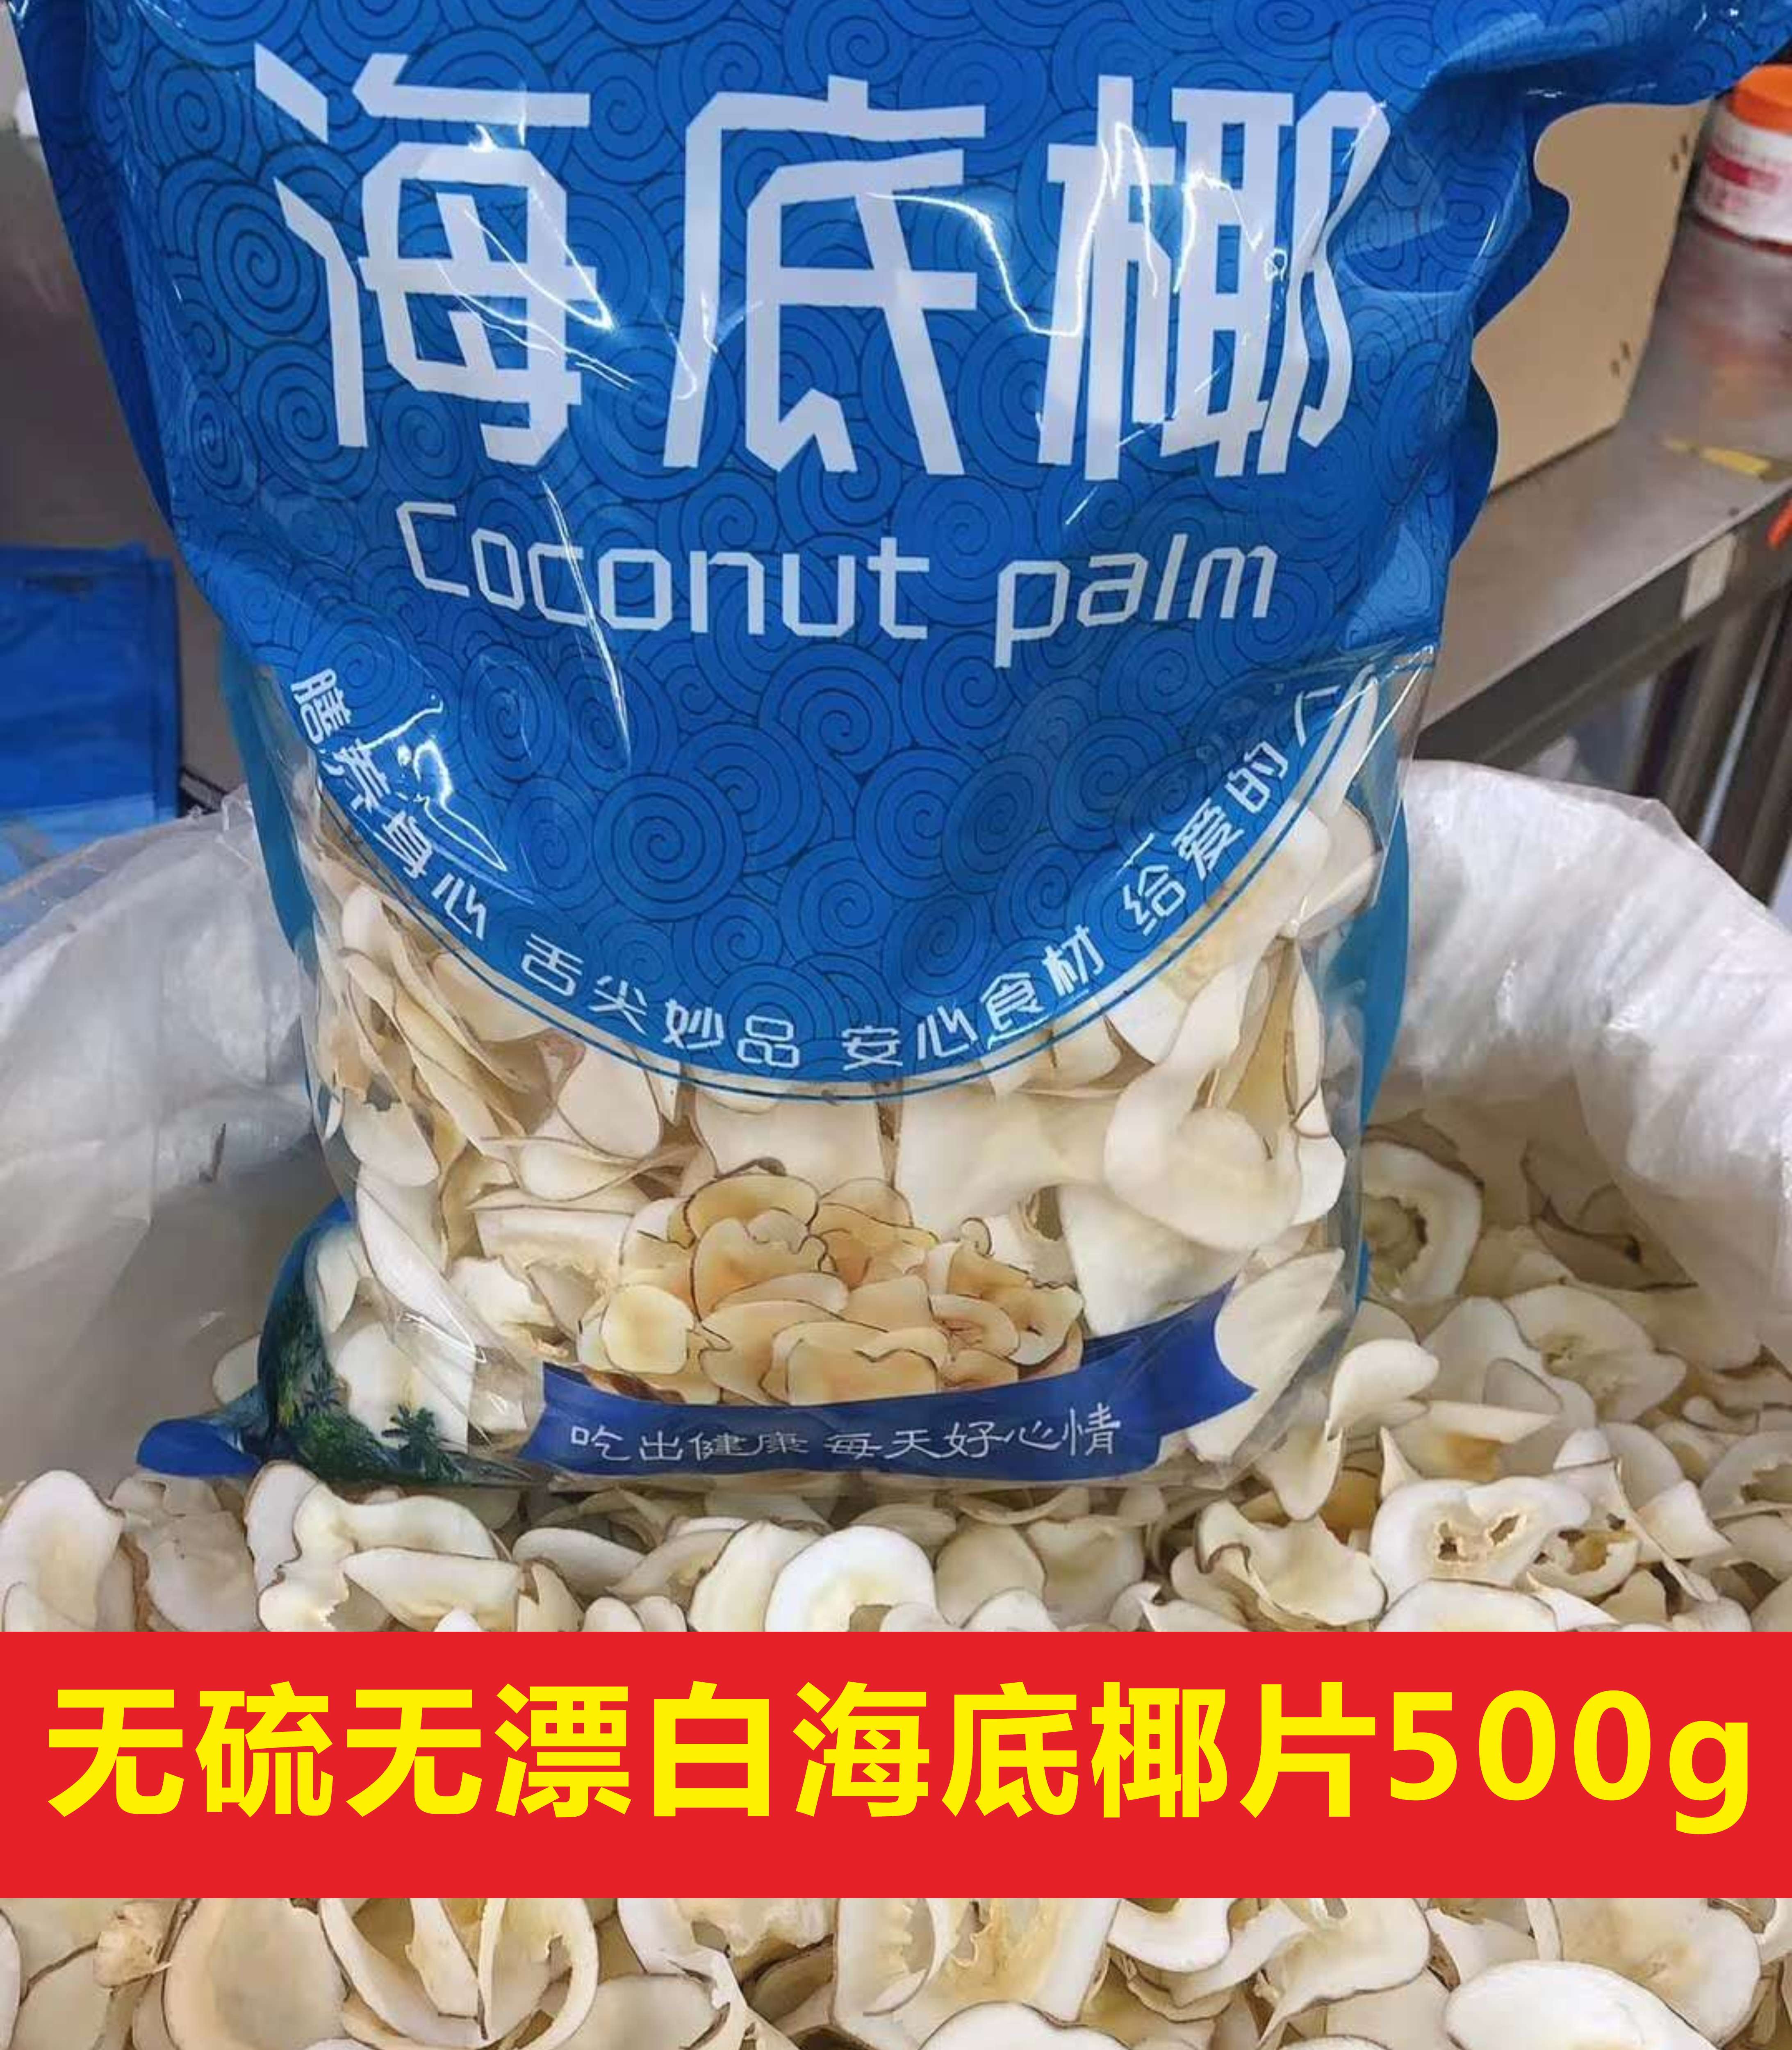 海底椰片500g 新鲜海底椰 糖水煲汤料泰国特产海底椰子广东炖汤料